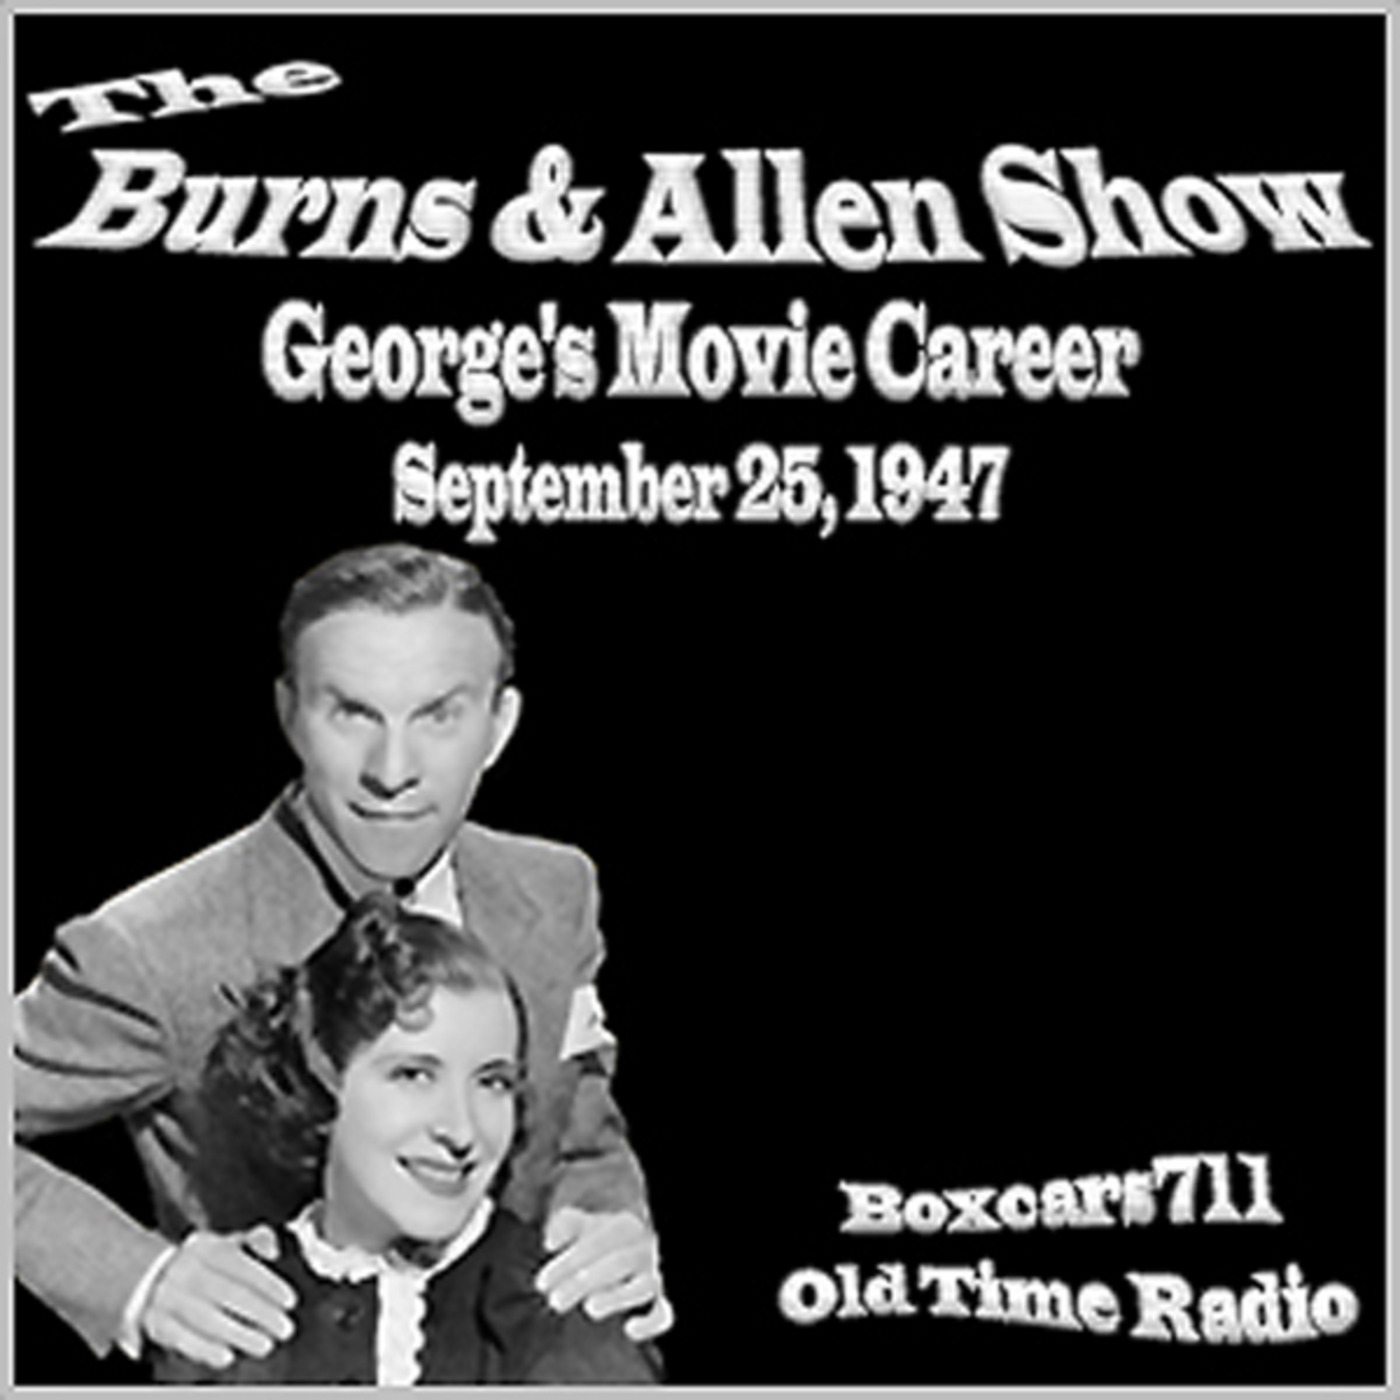 Episode 9602: Burns & Allen Show - 